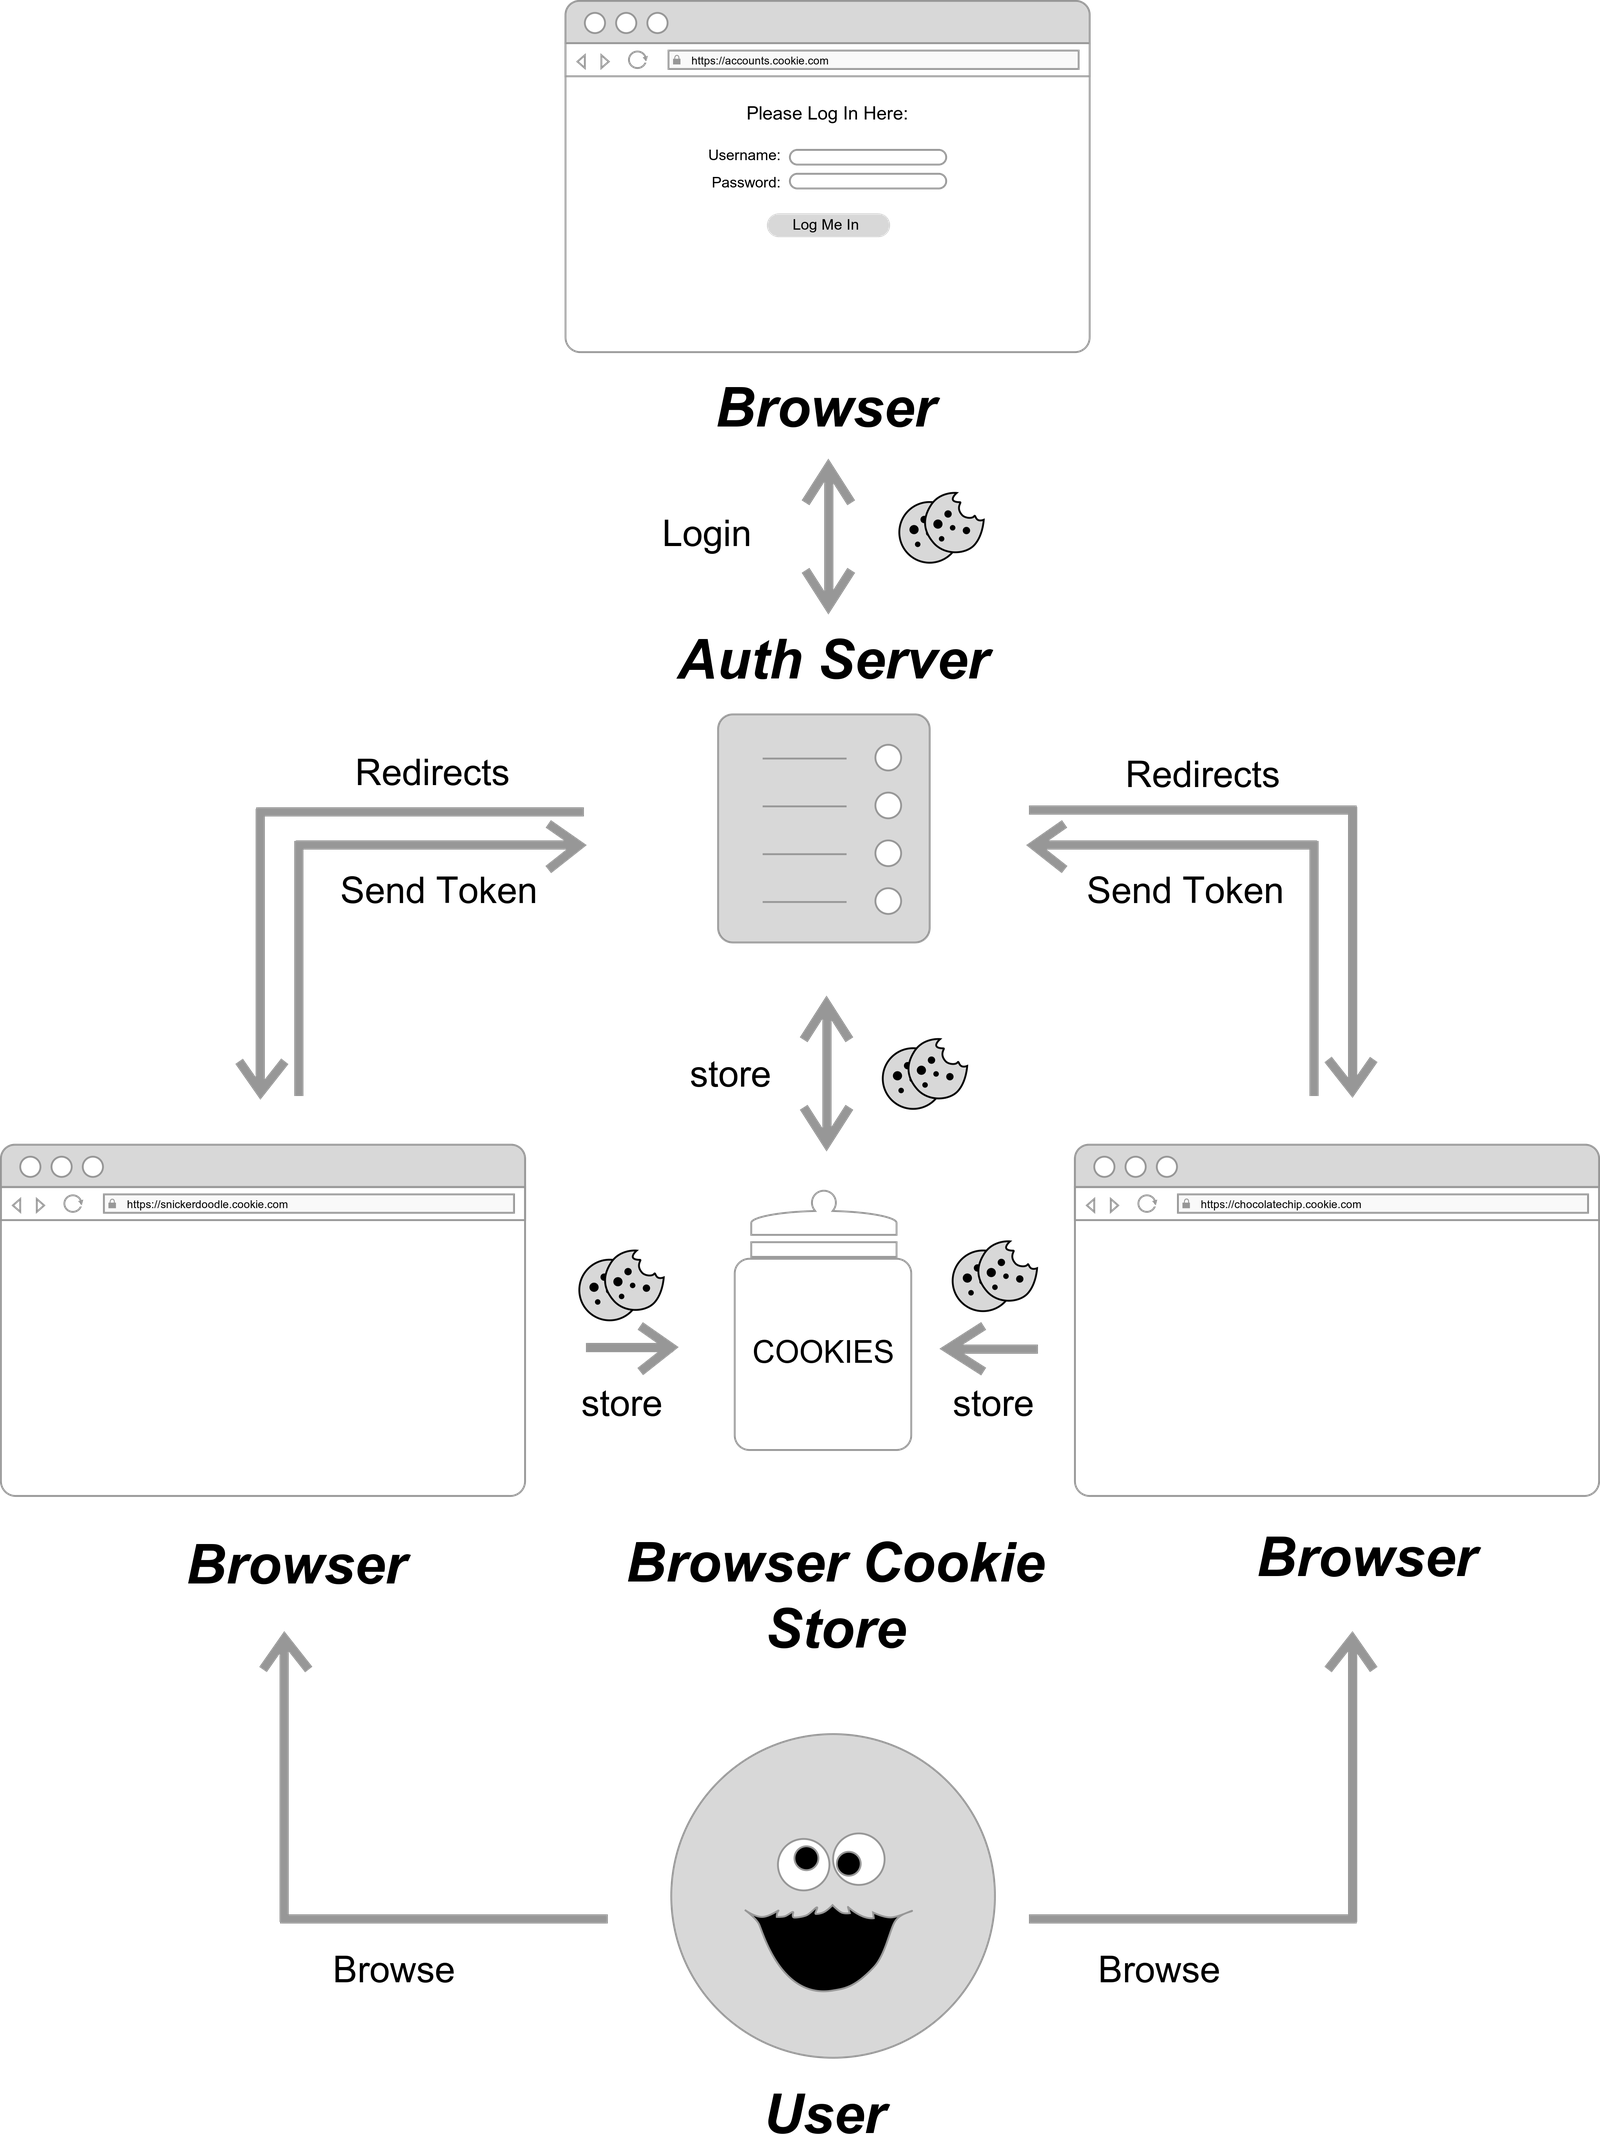 SSO Authentication Flow Diagram